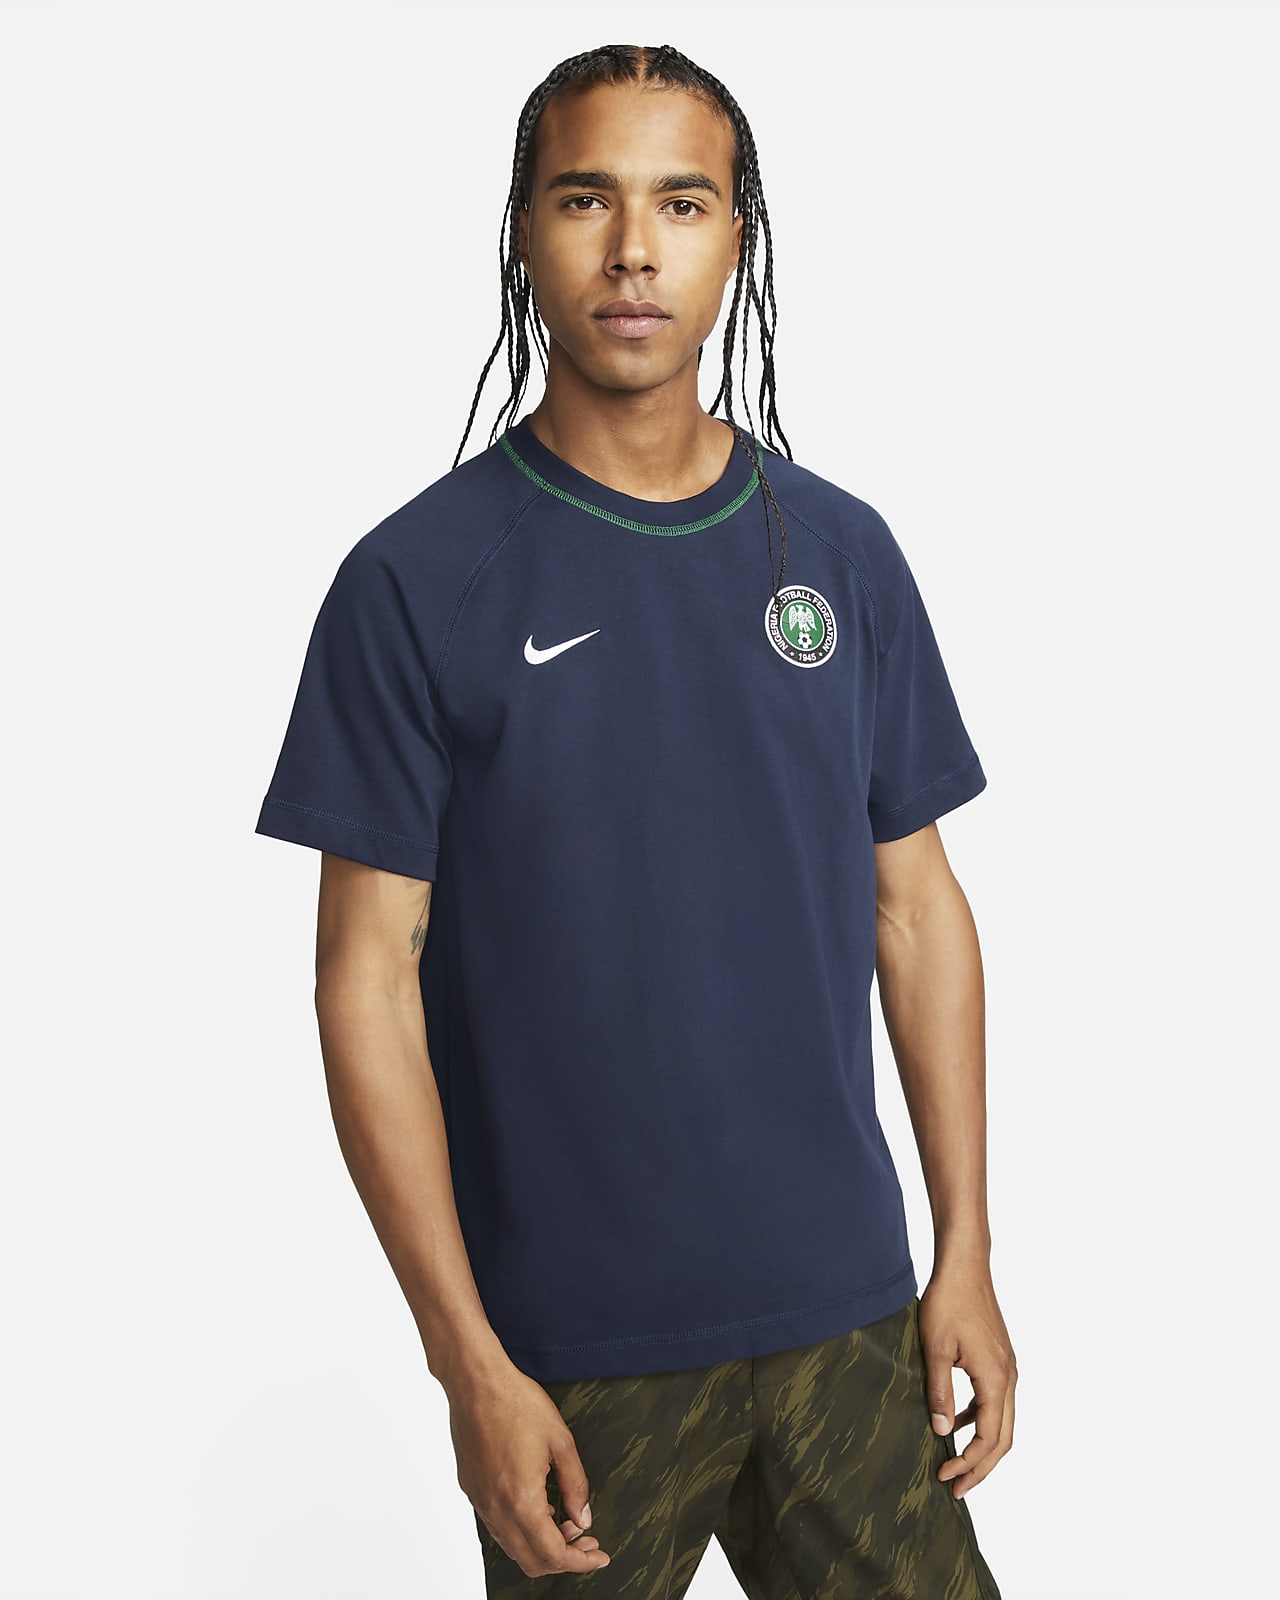 Nigeria Men's Soccer Top. Nike.com